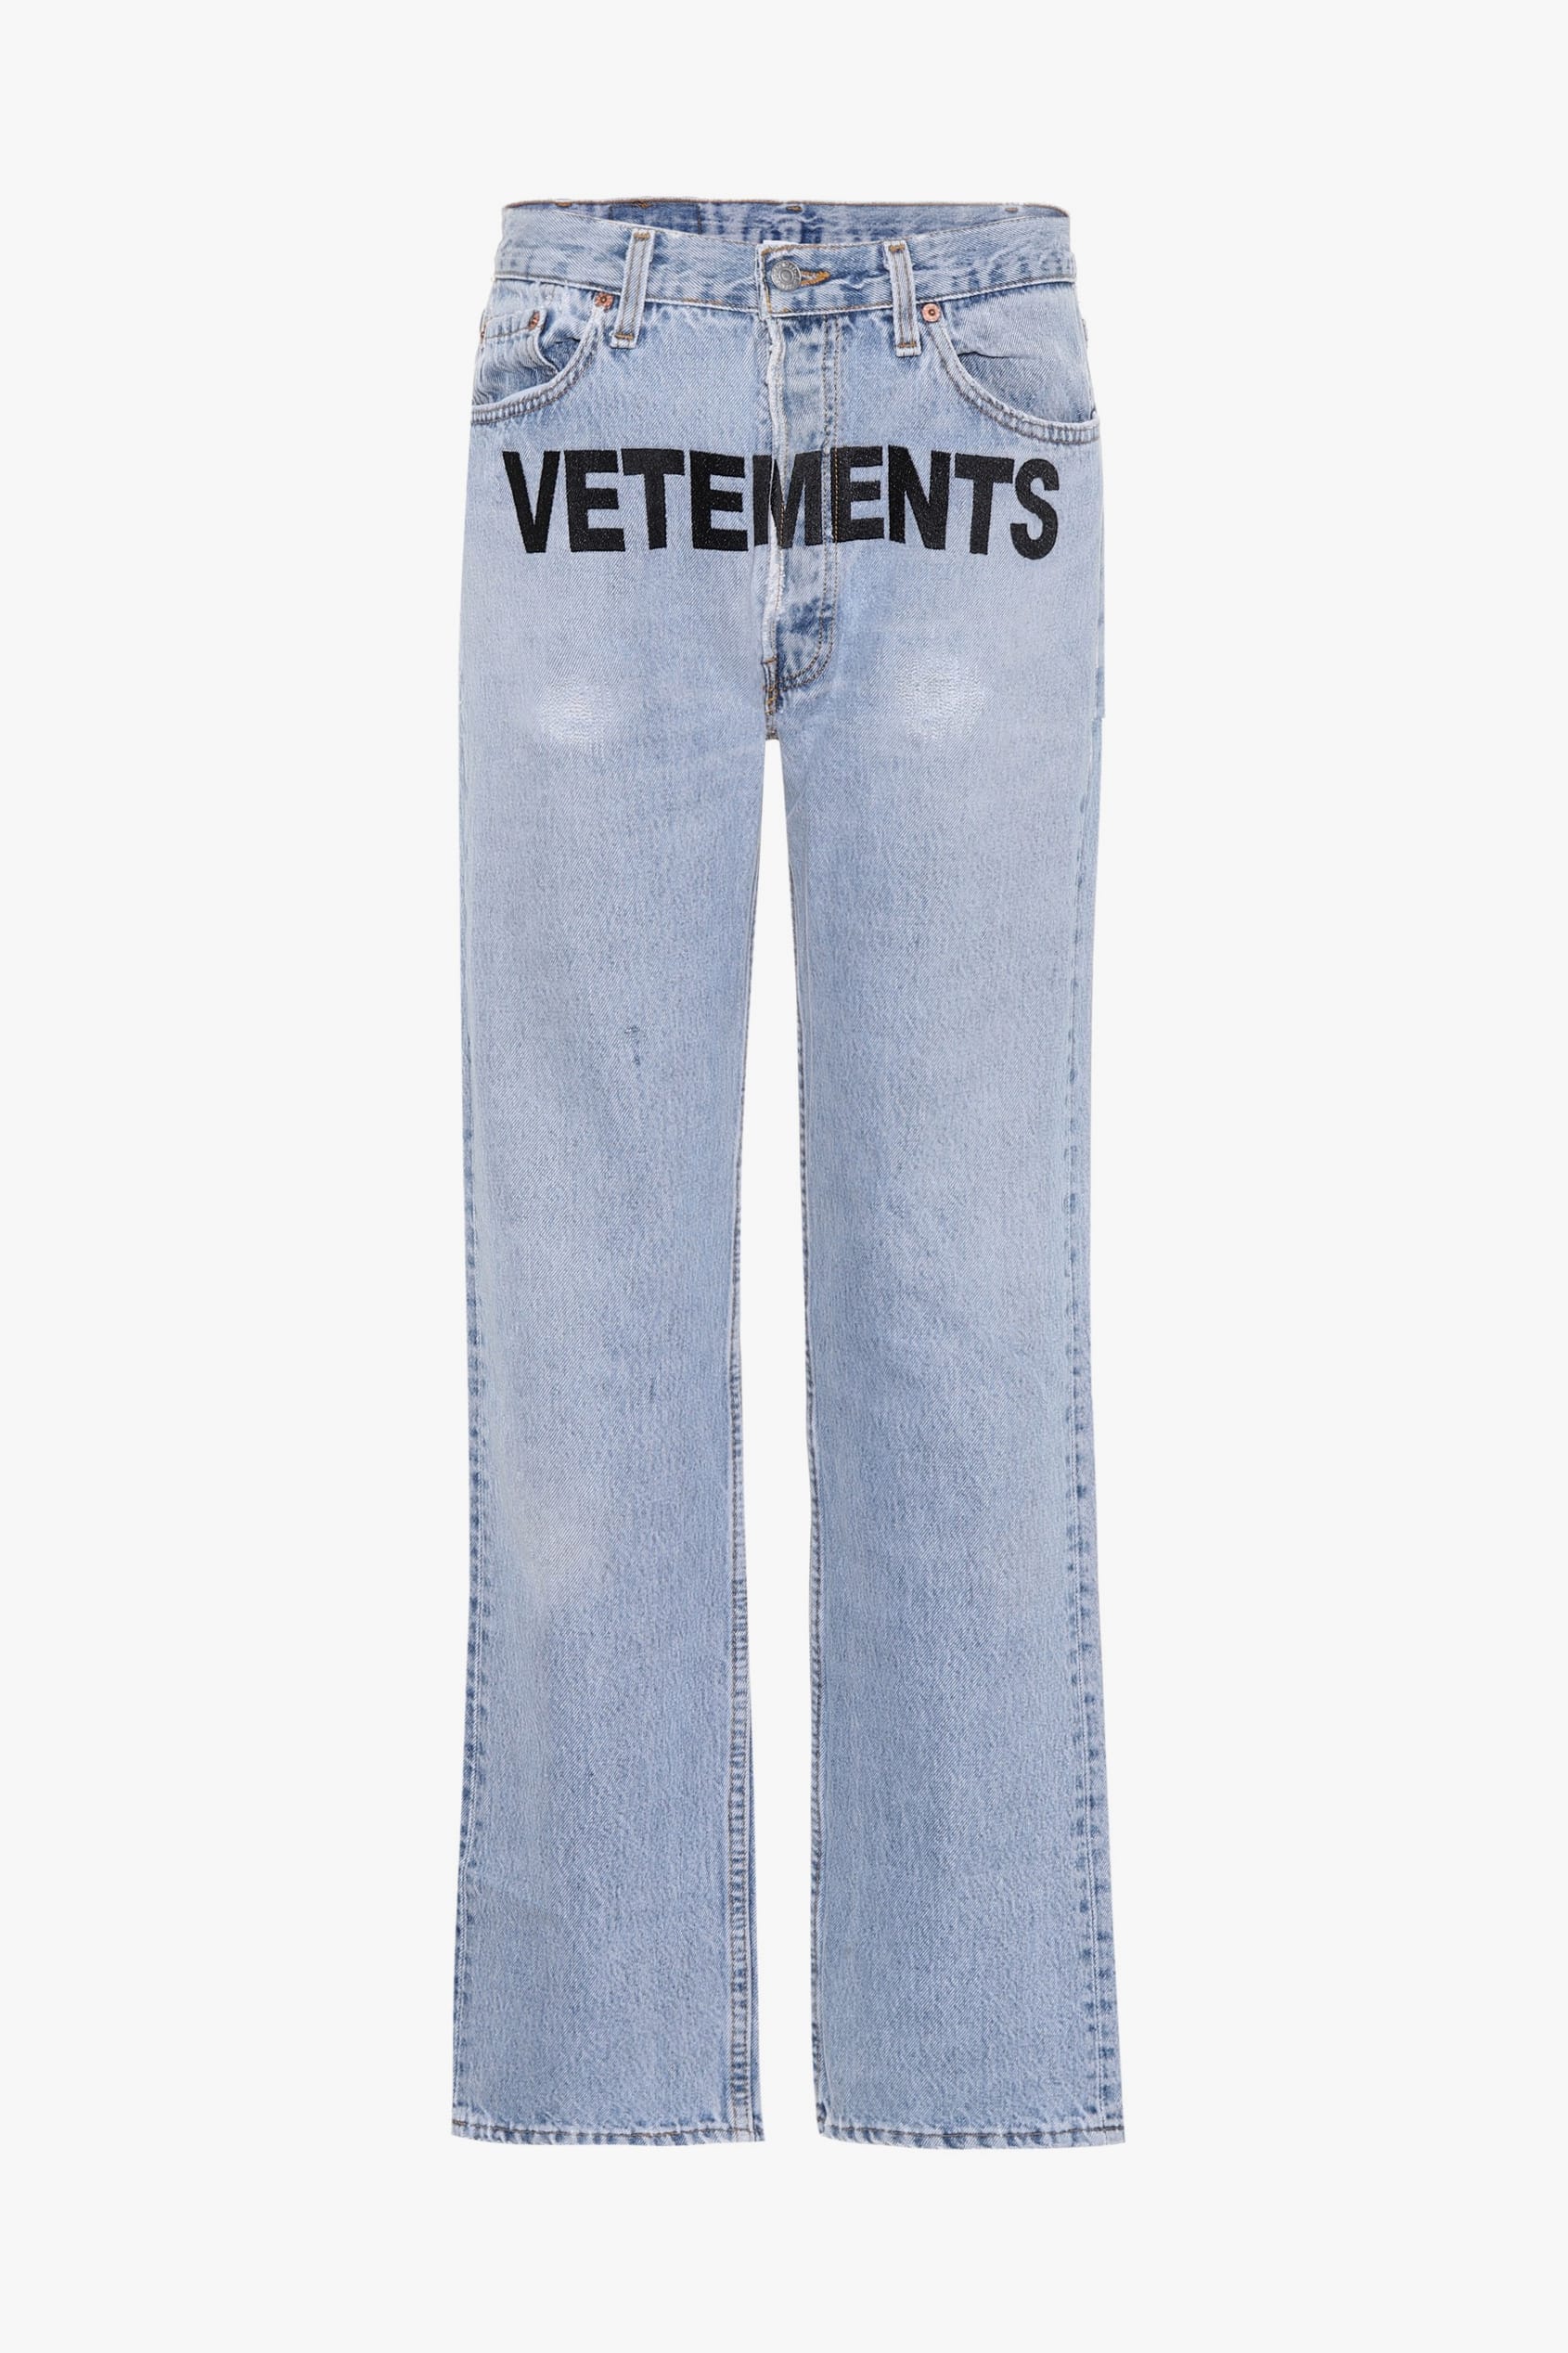 vetements x levi's logo jeans